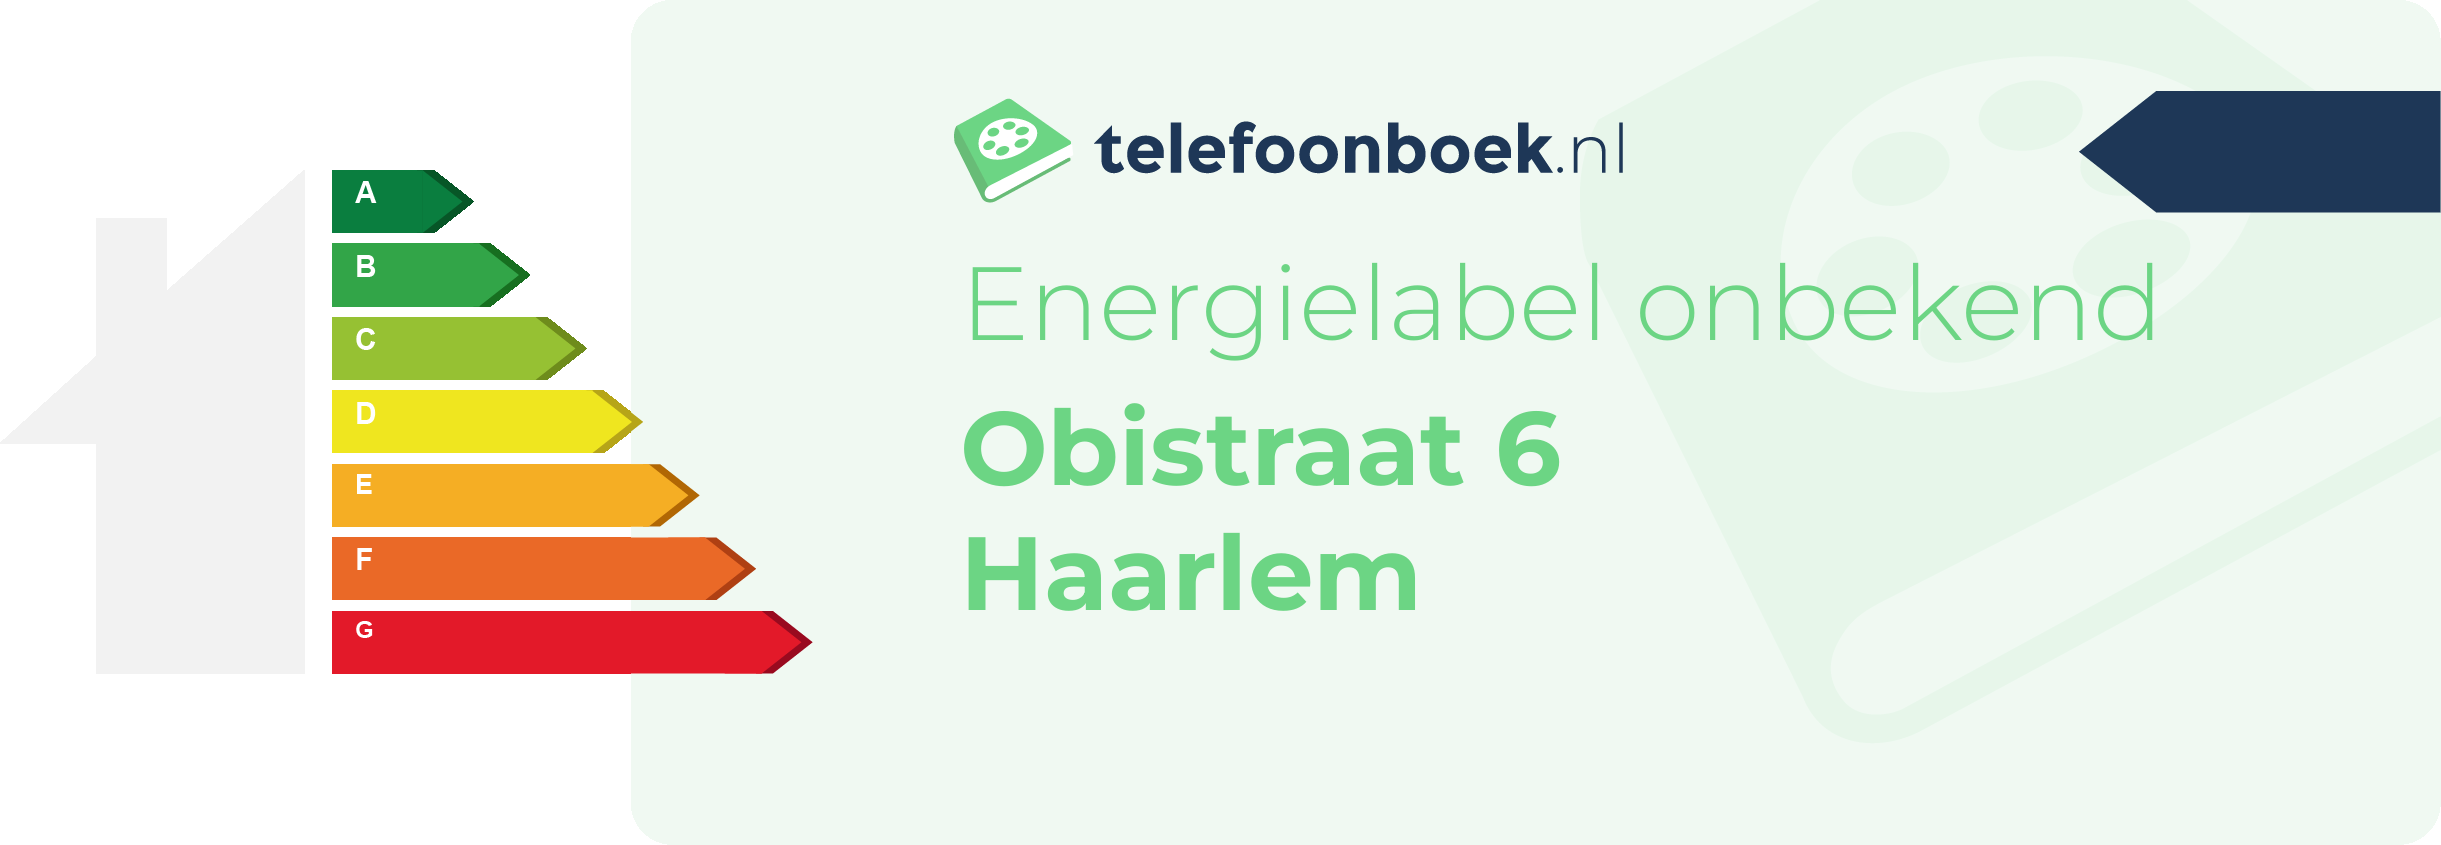 Energielabel Obistraat 6 Haarlem